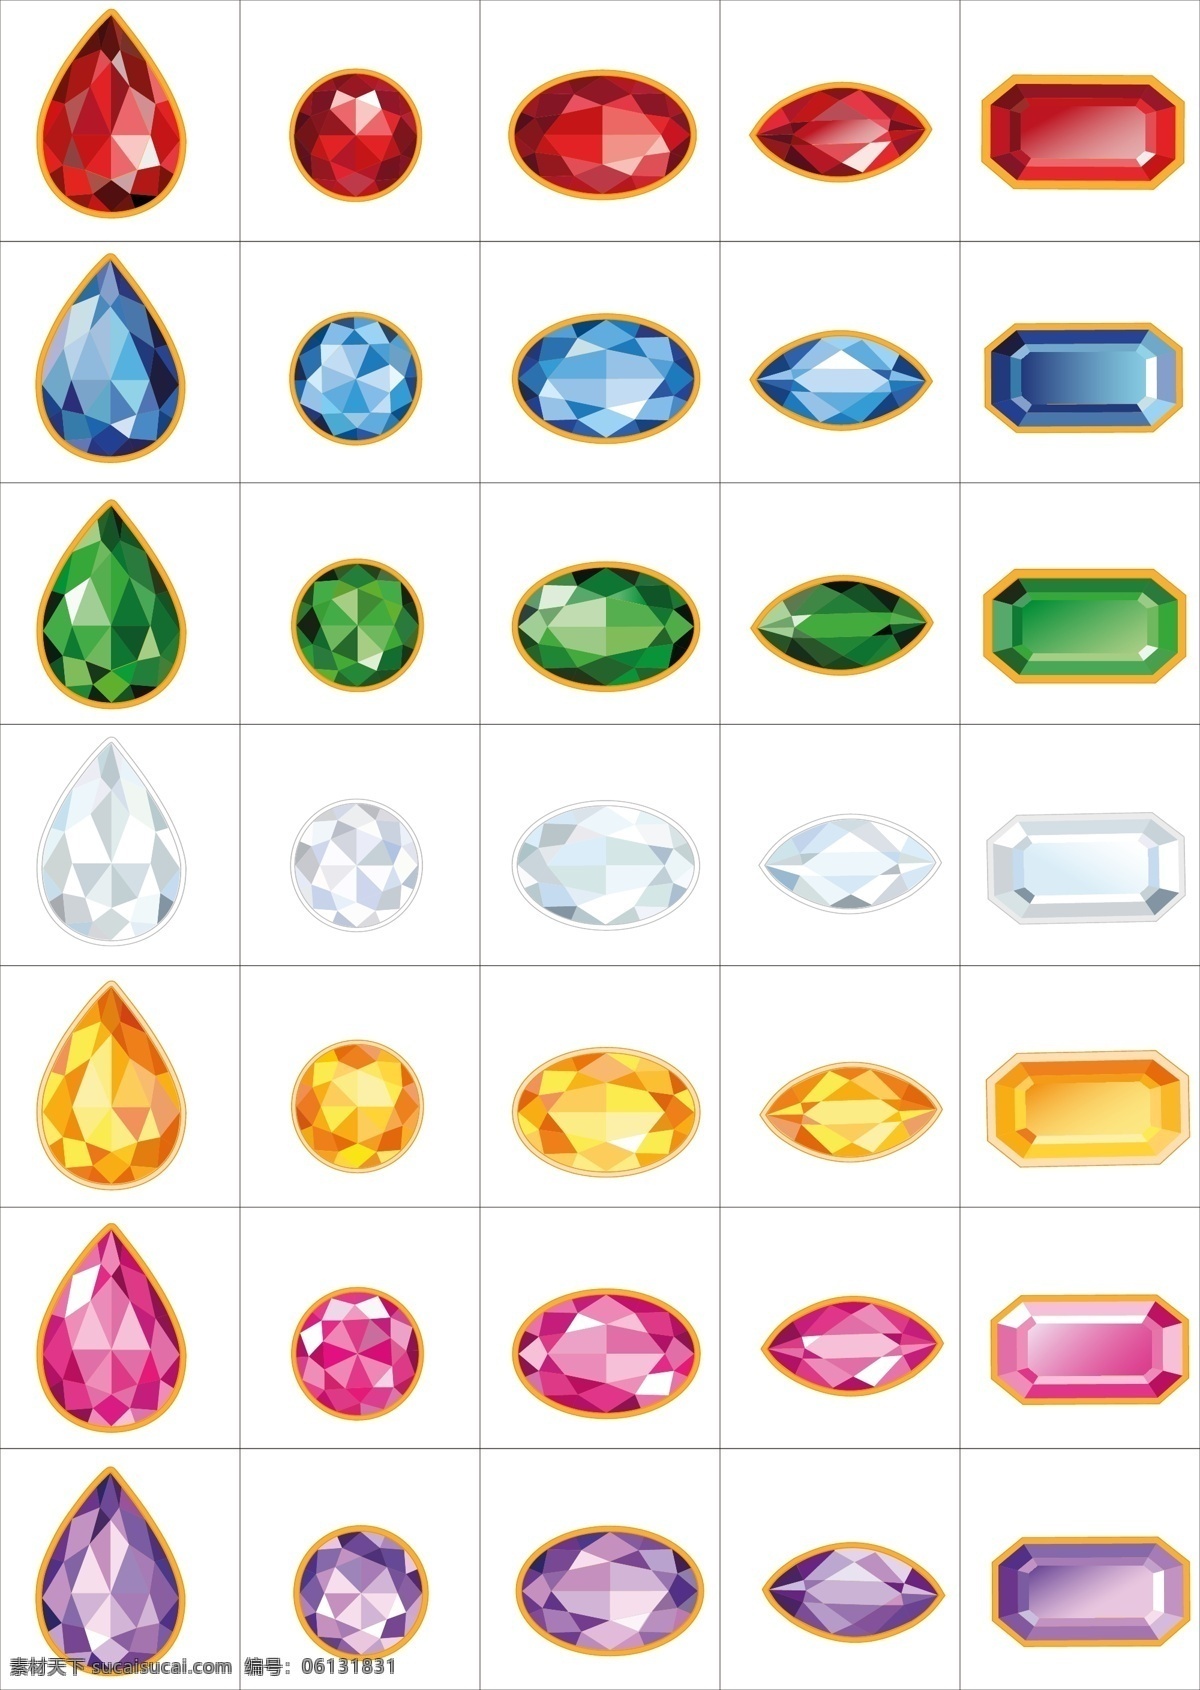 矢量 彩色 钻石 收集 矢量钻石 彩色钻石 钻石收集 红色钻石 蓝色钻石 绿色钻石 白色钻石 黄色钻石 紫色钻石 矢量彩色钻石 礼物 生活百科 休闲娱乐